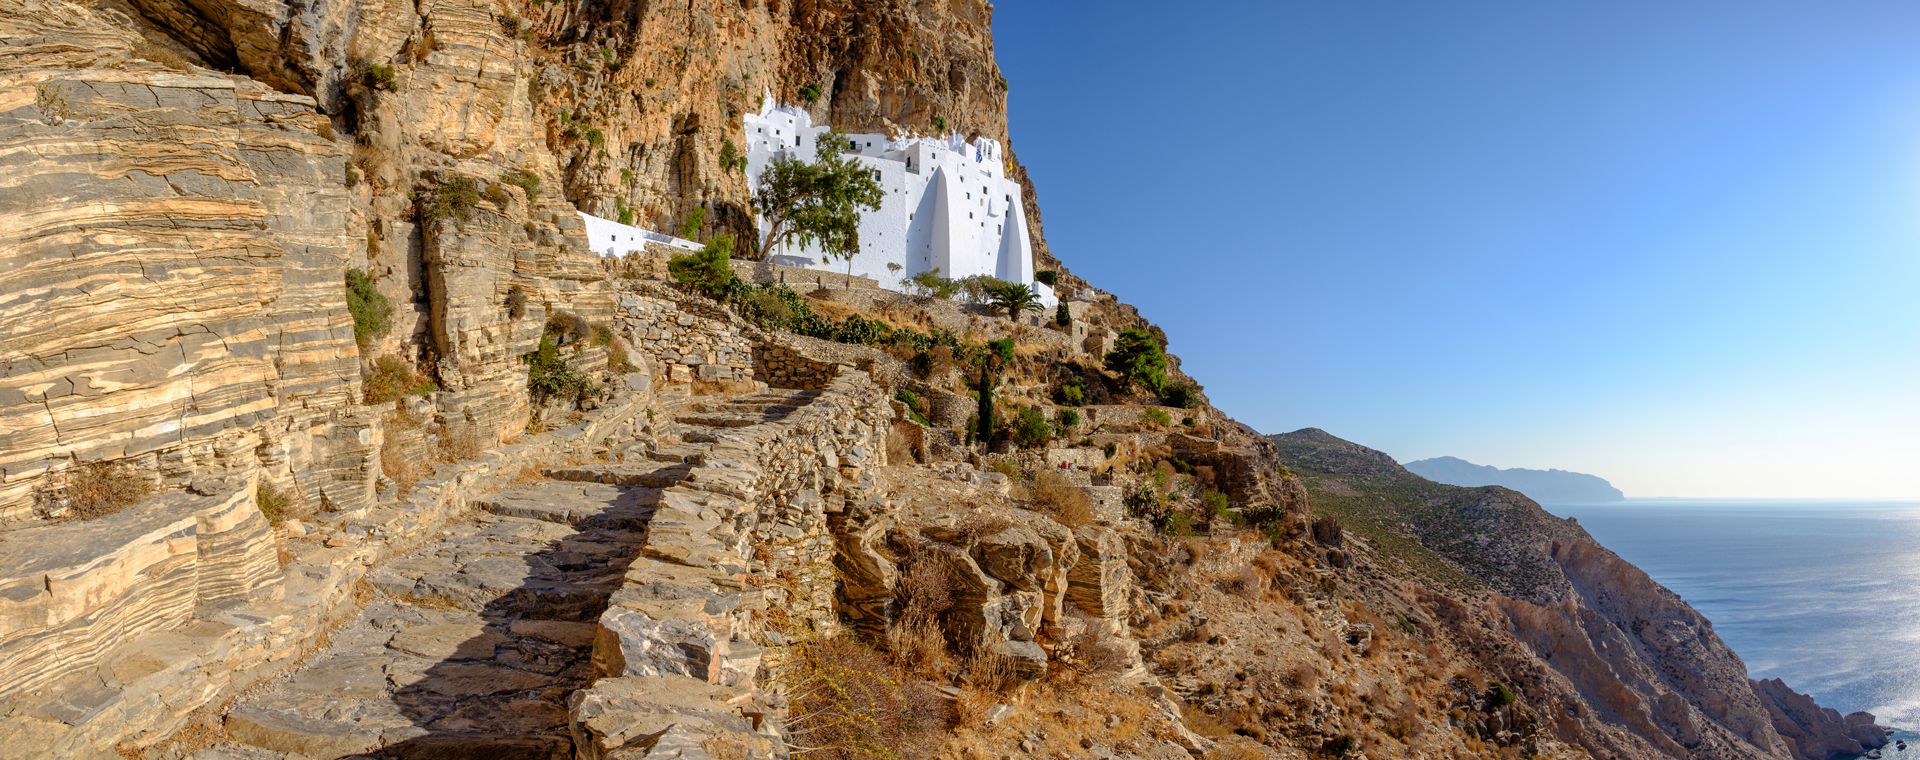 Amorgos : Panorama of the monastery of Panagia Chozoviotissa